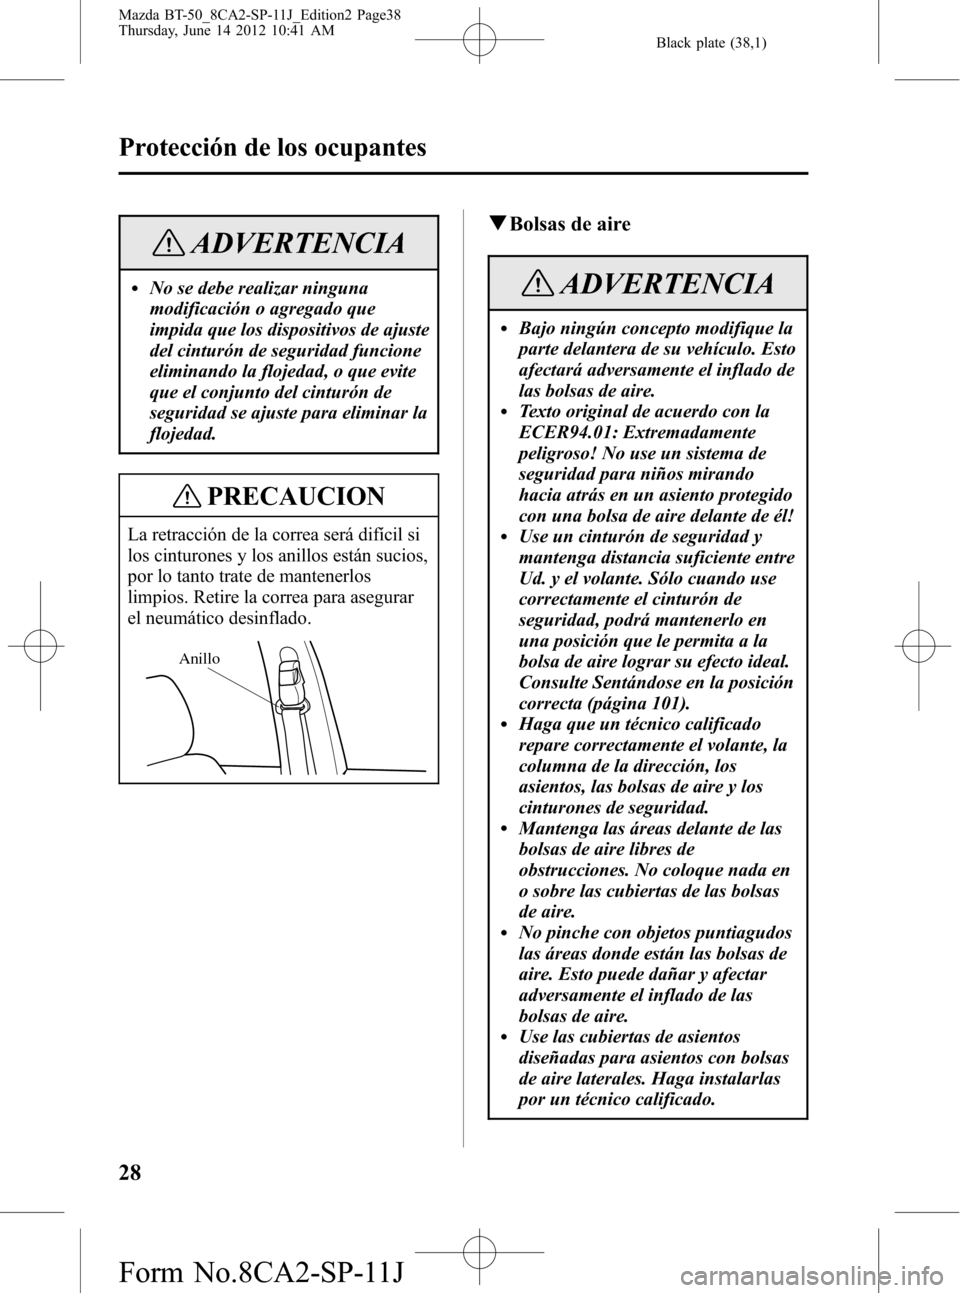 MAZDA MODEL BT-50 2014  Manual del propietario (in Spanish) Black plate (38,1)
ADVERTENCIA
lNo se debe realizar ninguna
modificación o agregado que
impida que los dispositivos de ajuste
del cinturón de seguridad funcione
eliminando la flojedad, o que evite
q